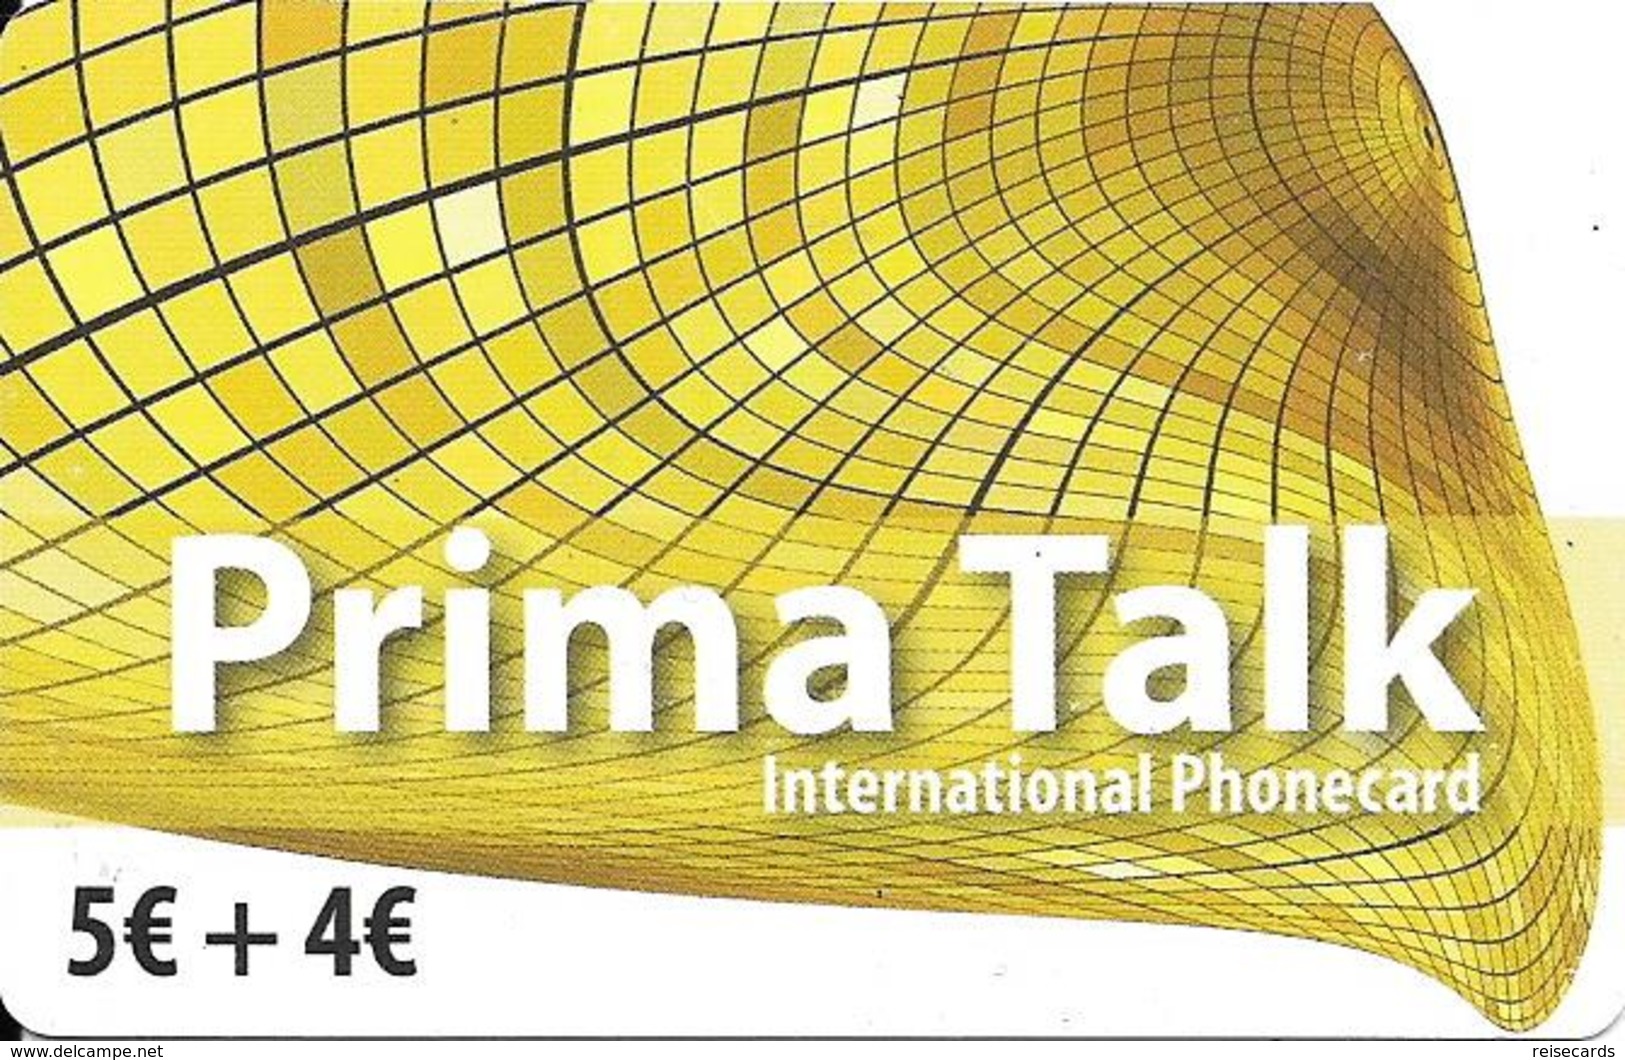 Prepaid: IDT Prima Talk 08.13 - Oesterreich